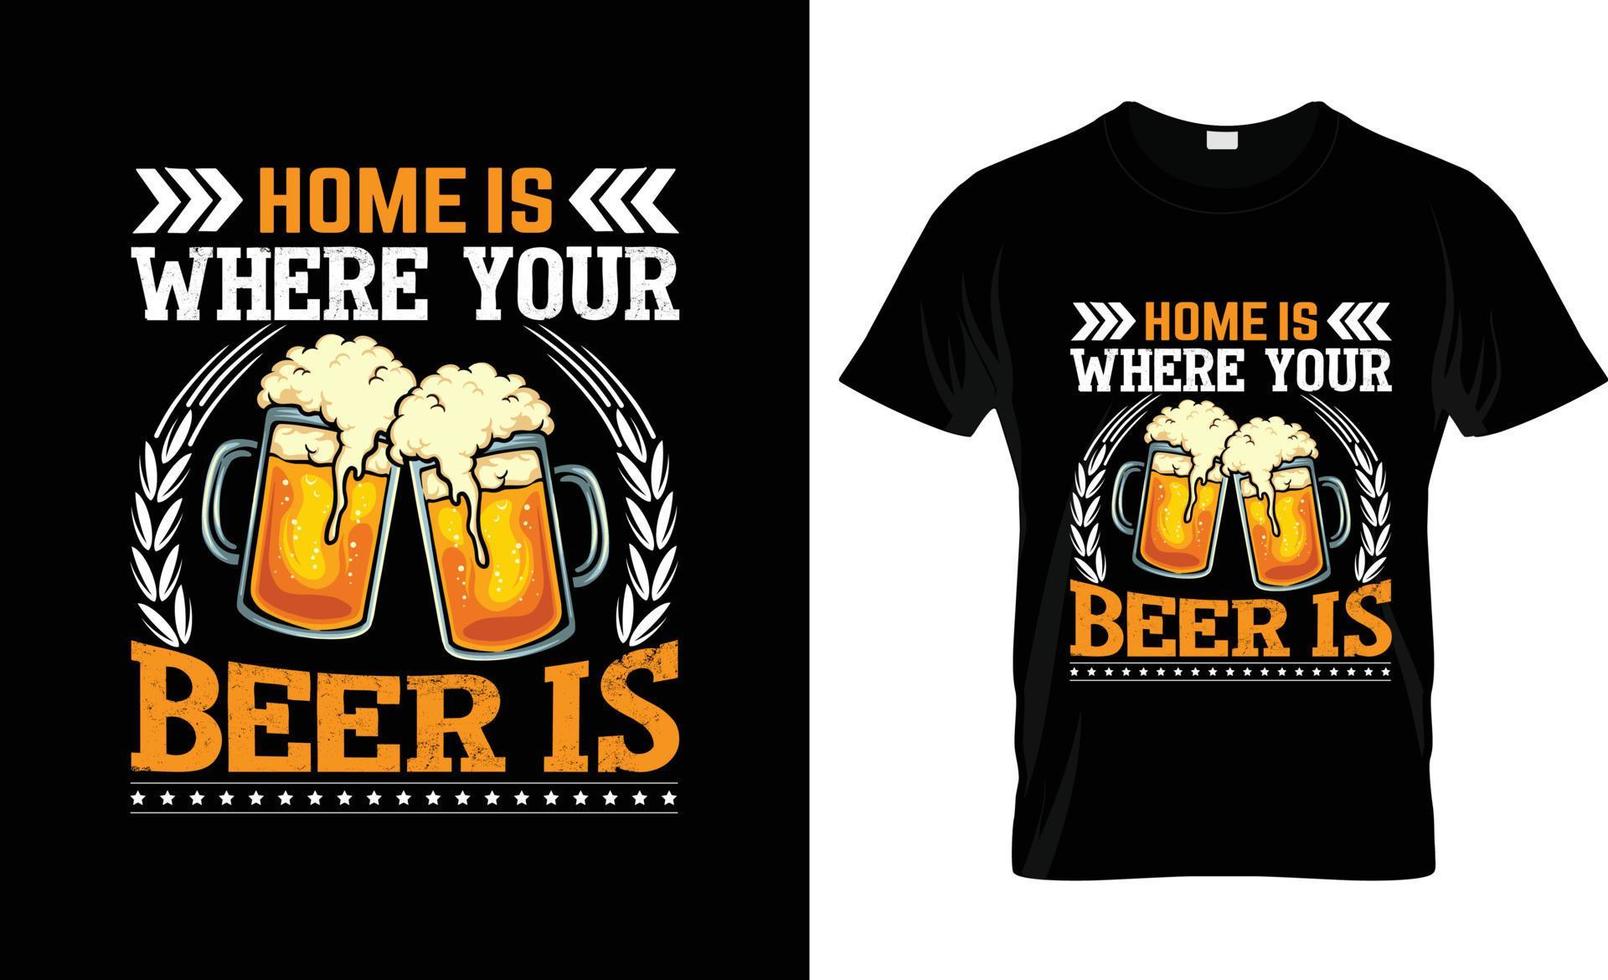 slogan de t-shirt de cerveja artesanal e design de vestuário, tipografia de cerveja artesanal, vetor de cerveja artesanal, ilustração de cerveja artesanal